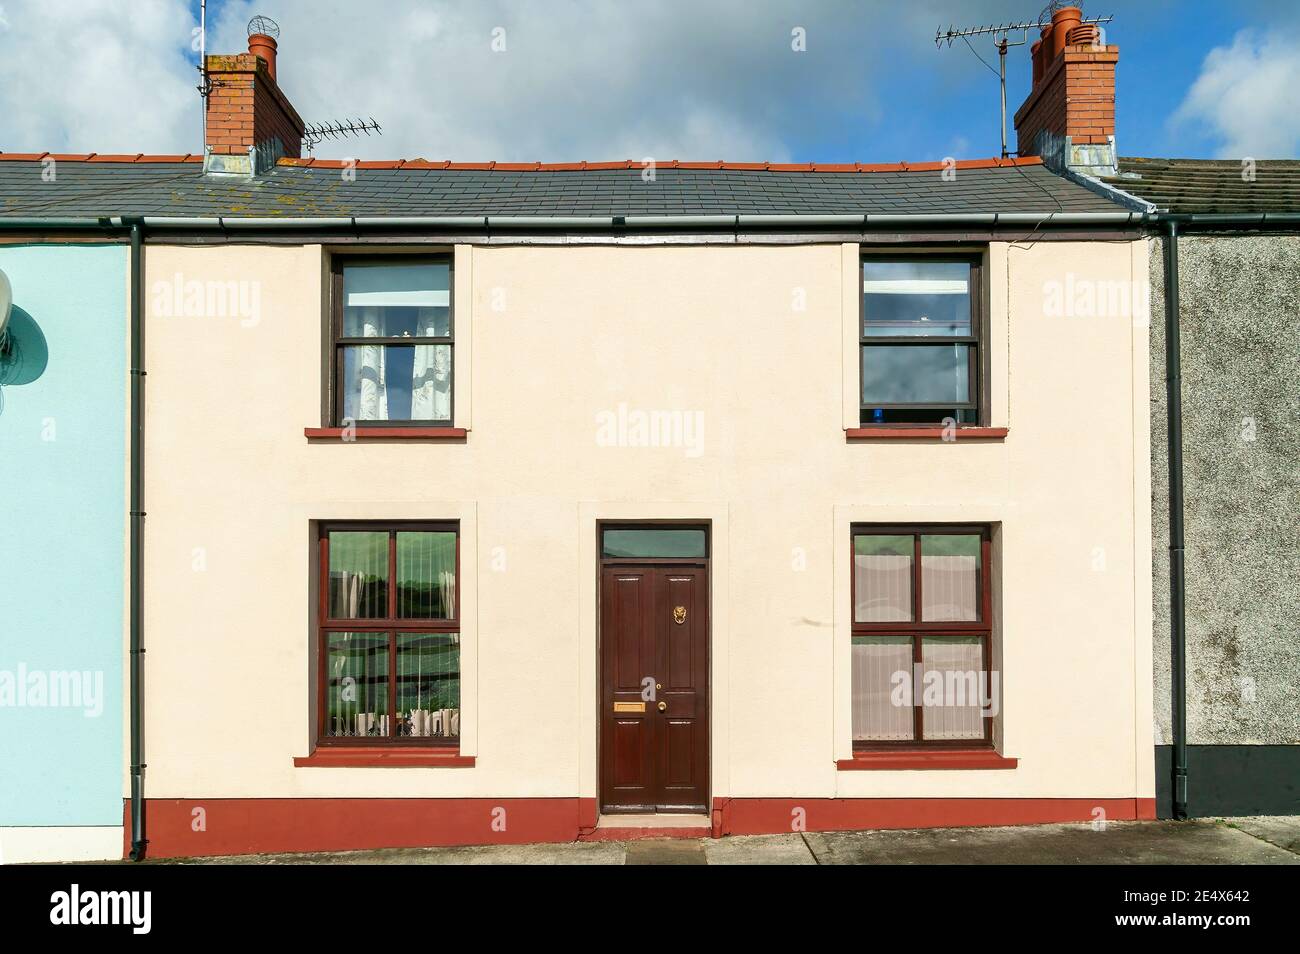 Edifici di architettura vecchio stile di colorate case a schiera in Pembrokeshire Galles UK, foto d'azione Foto Stock